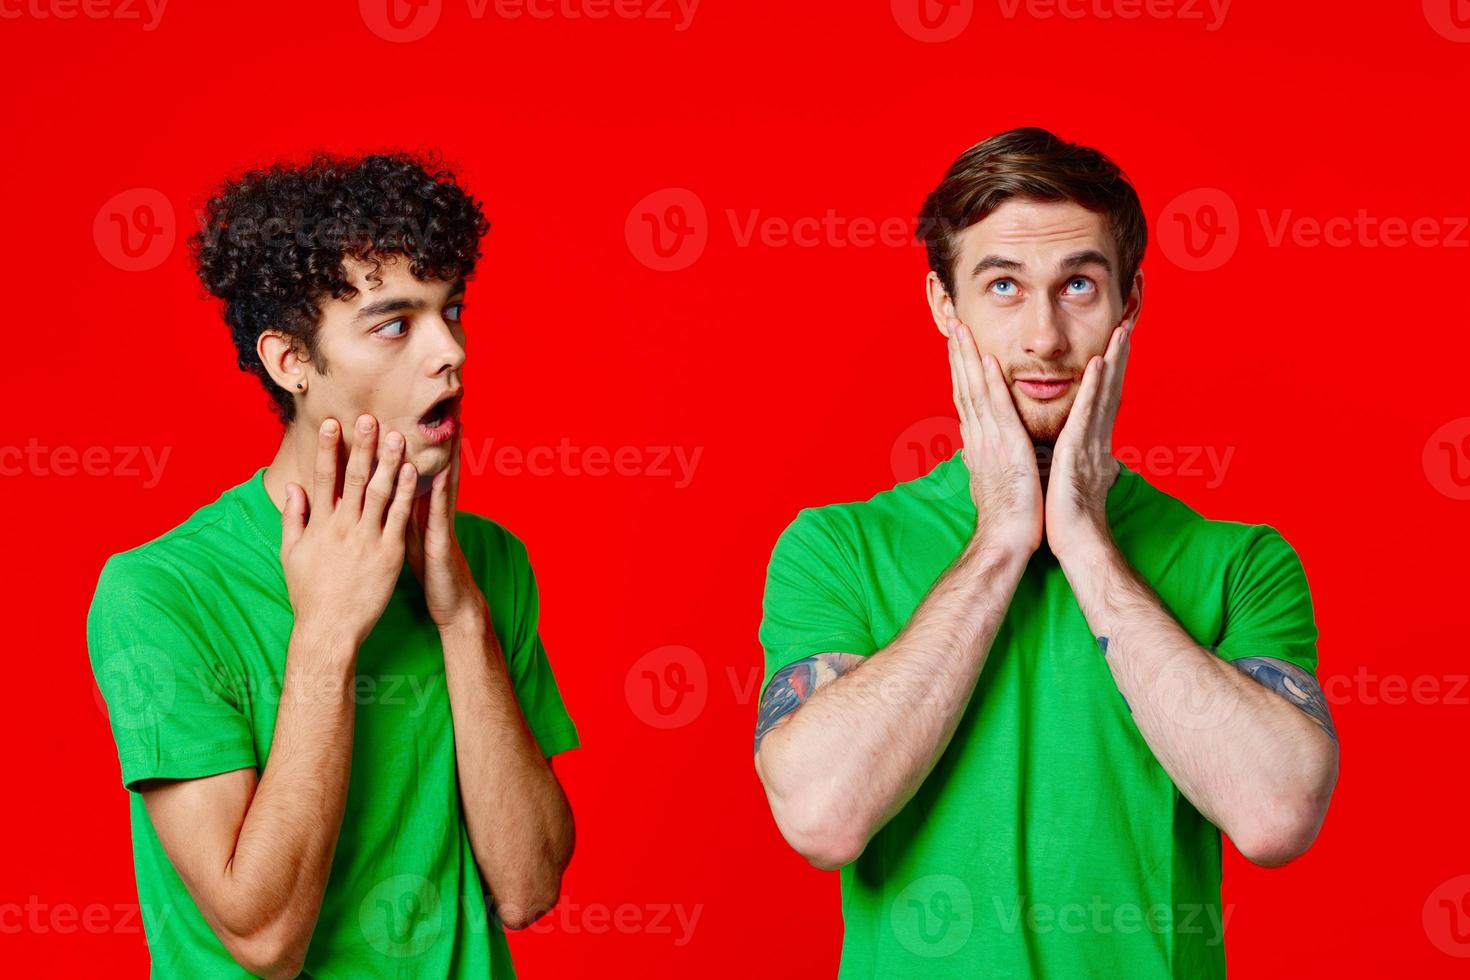 glad vänner i grön t-tröjor håll på till de ansikte av känsla foto